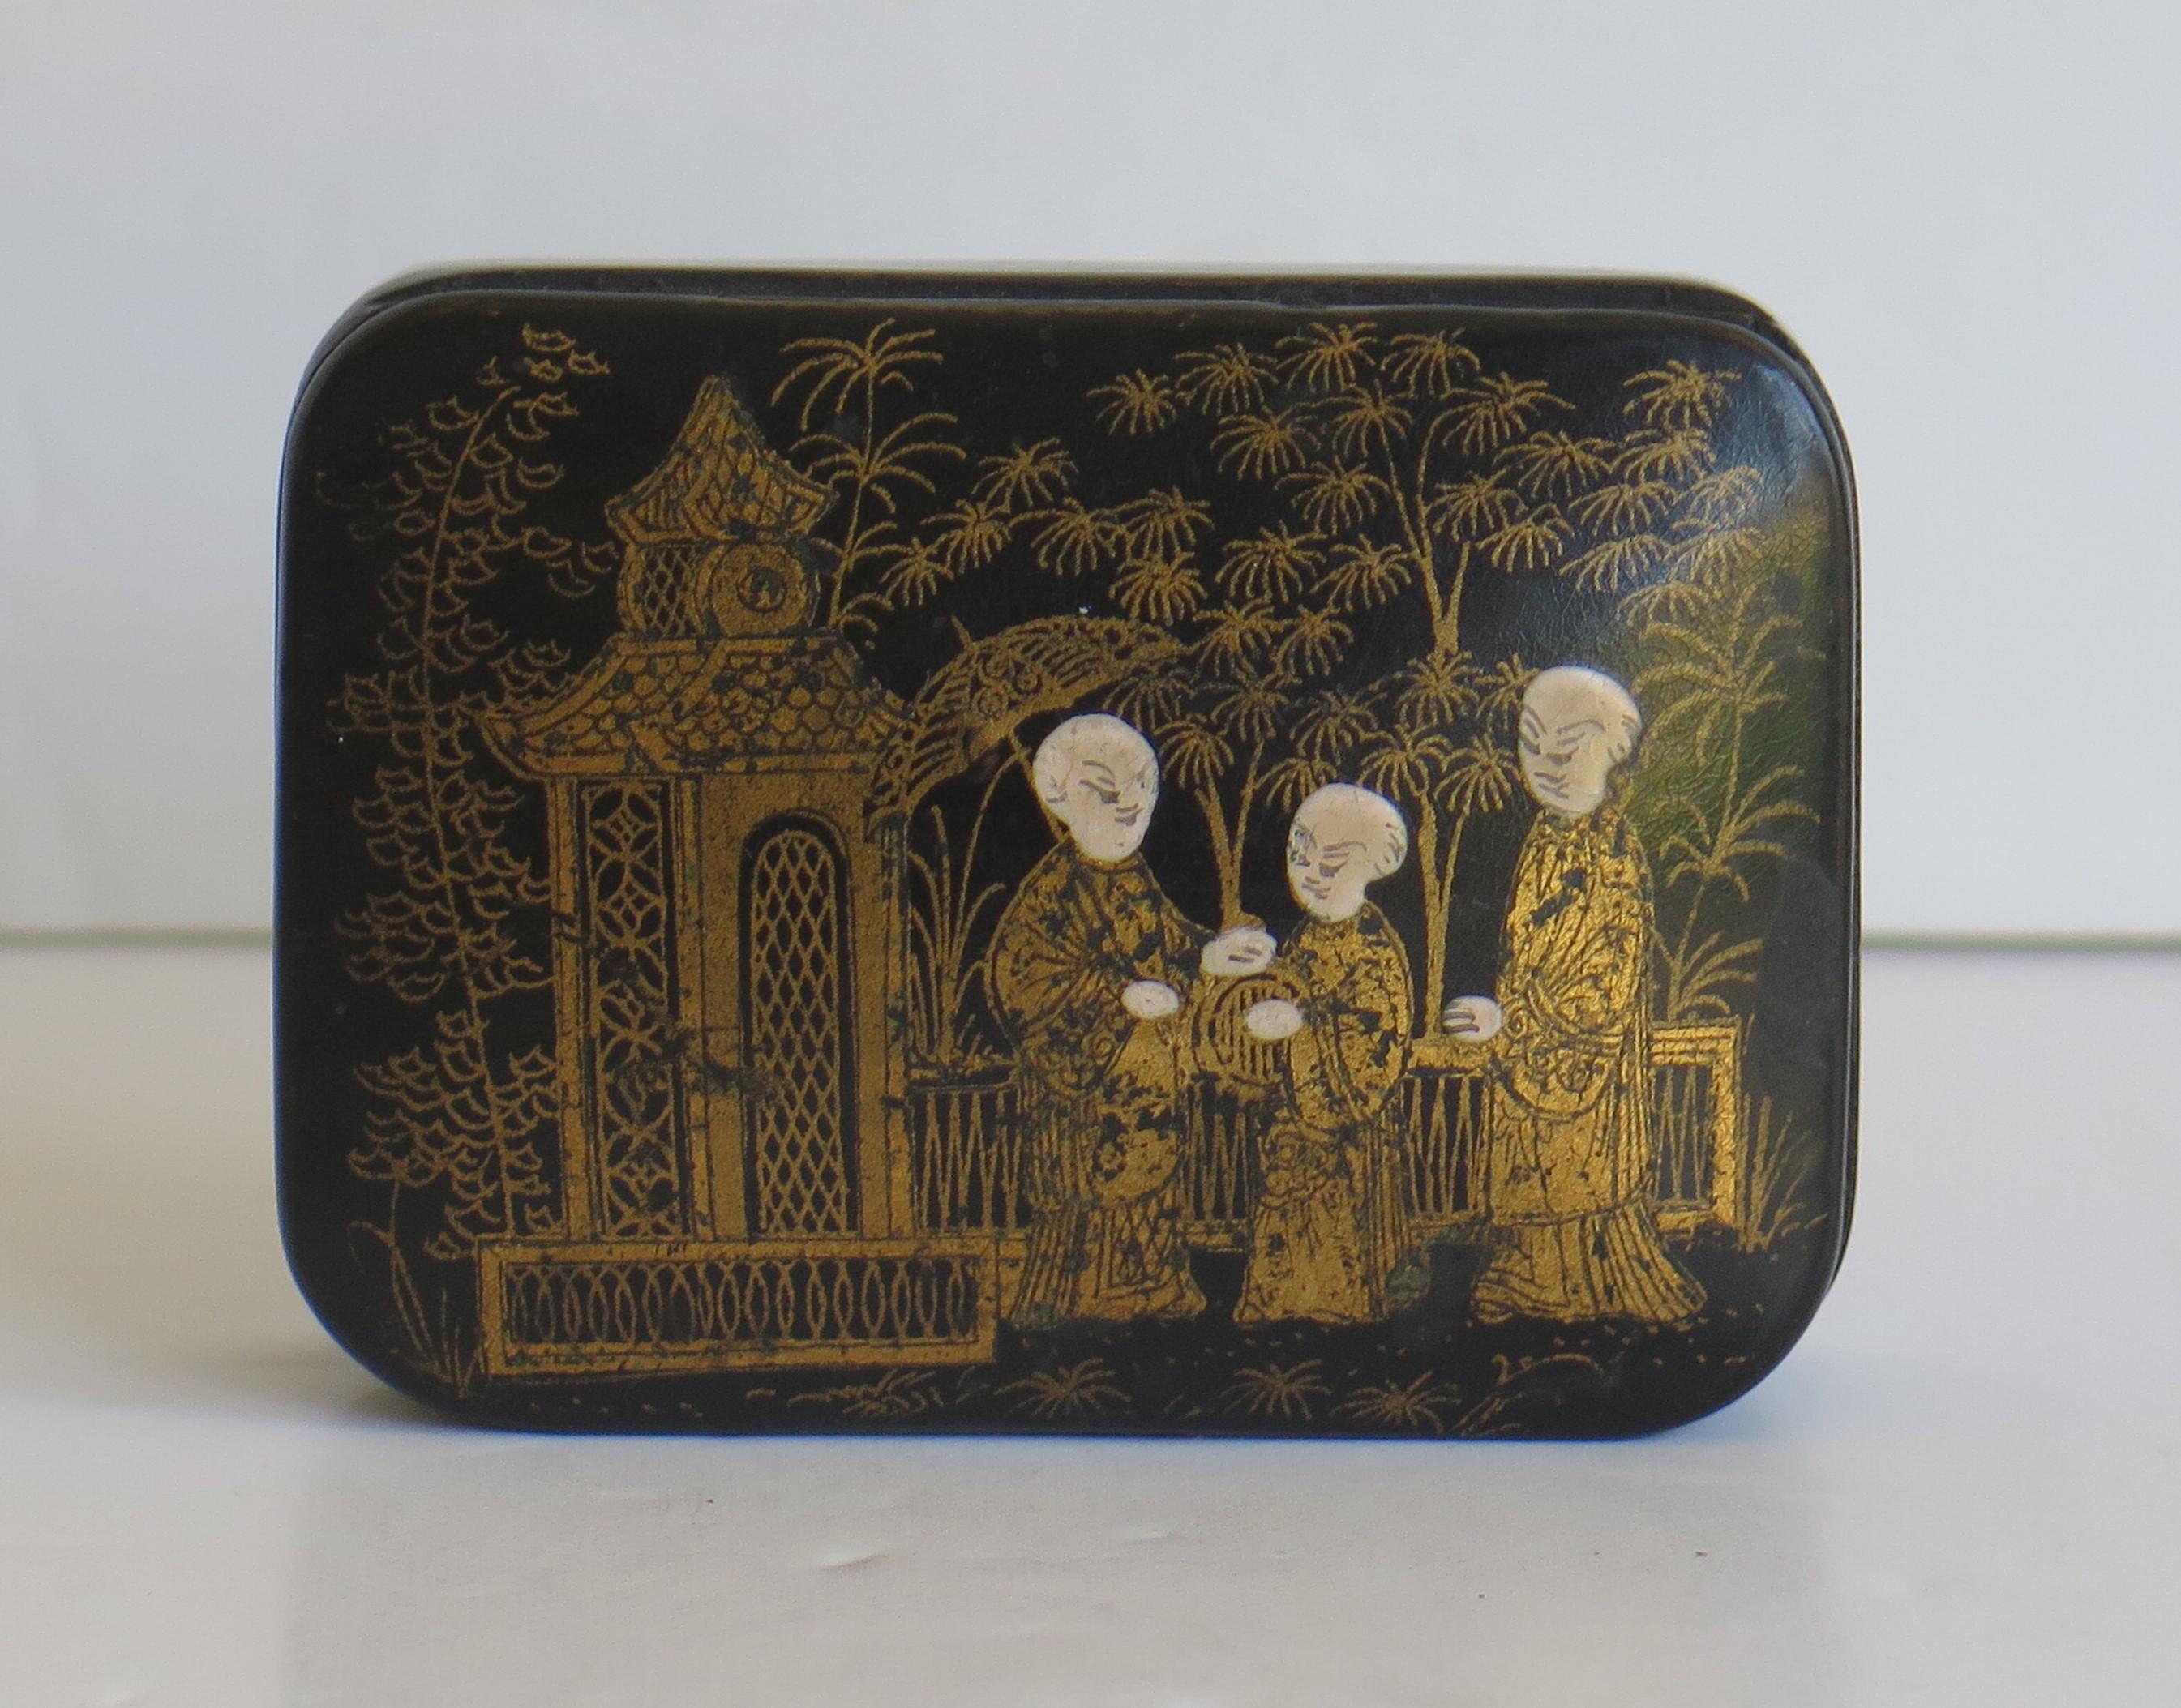 Il s'agit d'une bonne boîte à couvercle en papier mâché, de forme rectangulaire, laquée noire, émaillée et dorée à la main, fabriquée au Japon au XIXe siècle, au début de la période Meiji.

Cette boîte en papier mâché de forme rectangulaire